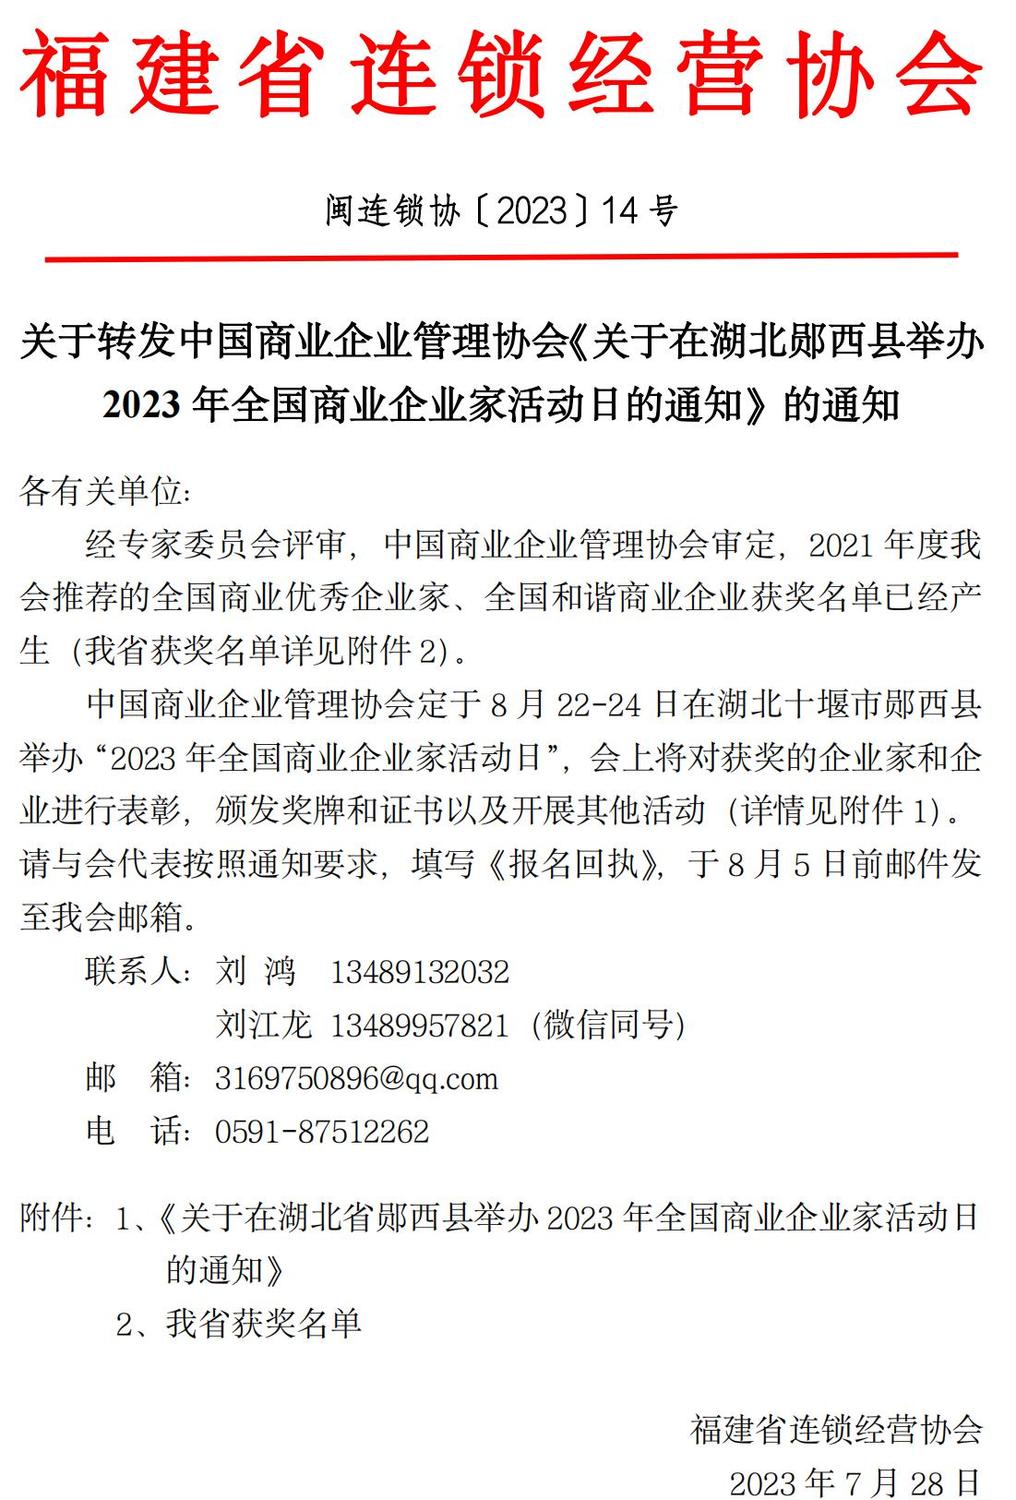 2023中国商业企业家活动日的通知_00.jpg